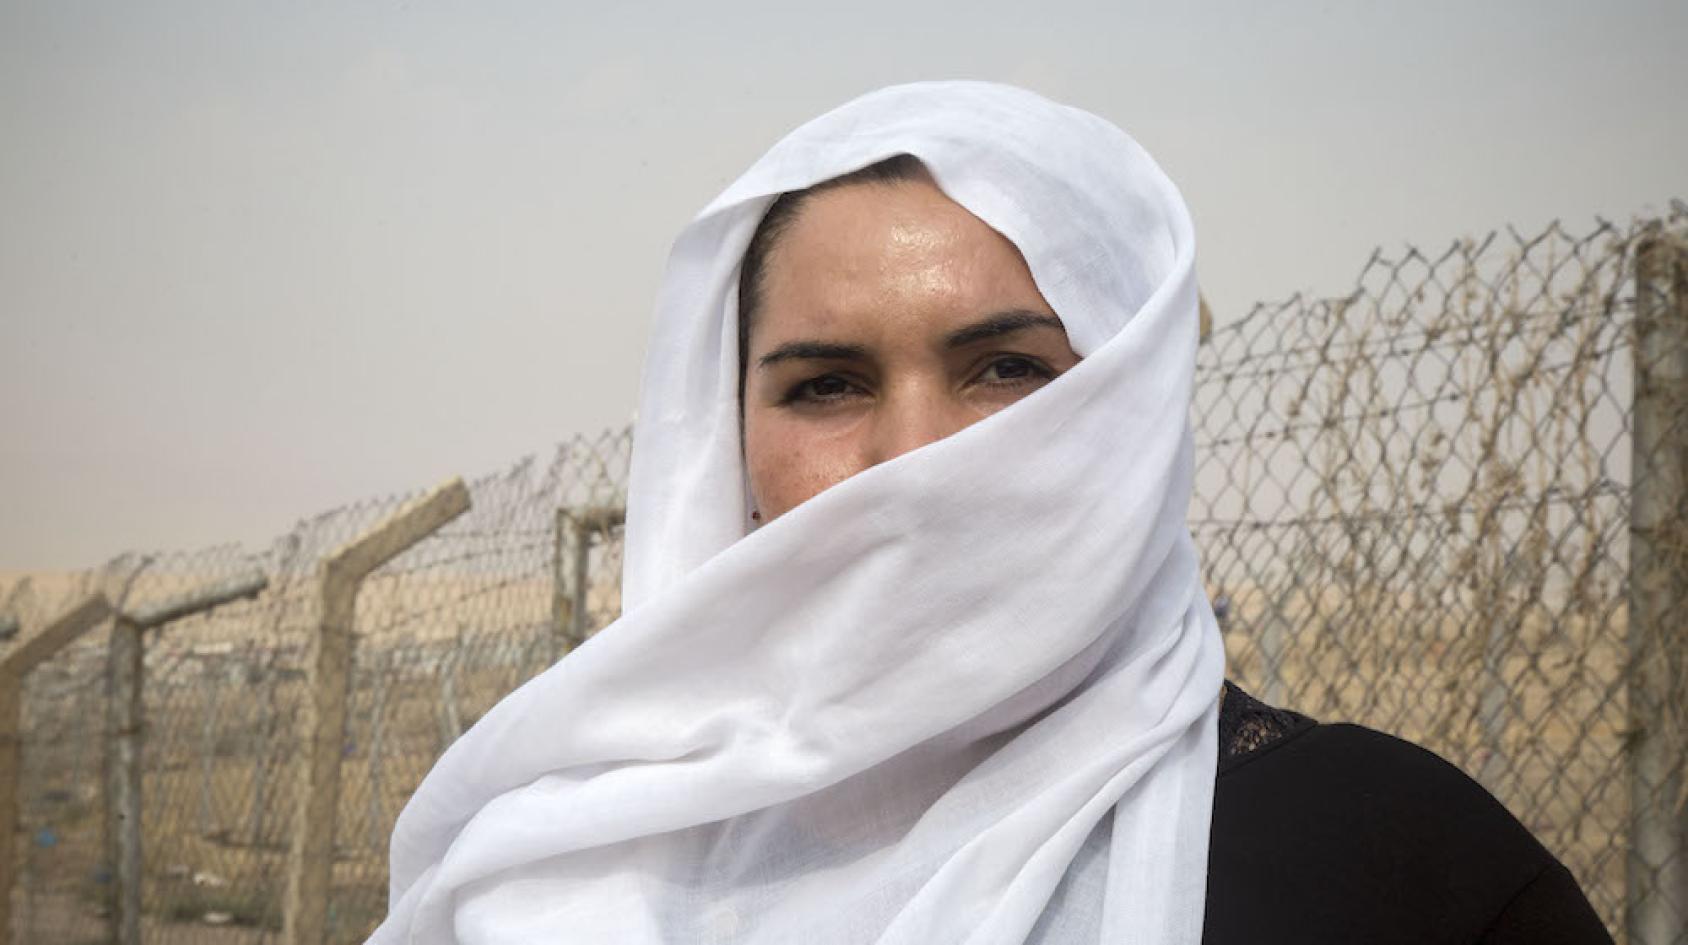 Una poderosa imagen de los ojos de una mujer detrás de un velo blanco cerca de una valla metálica.